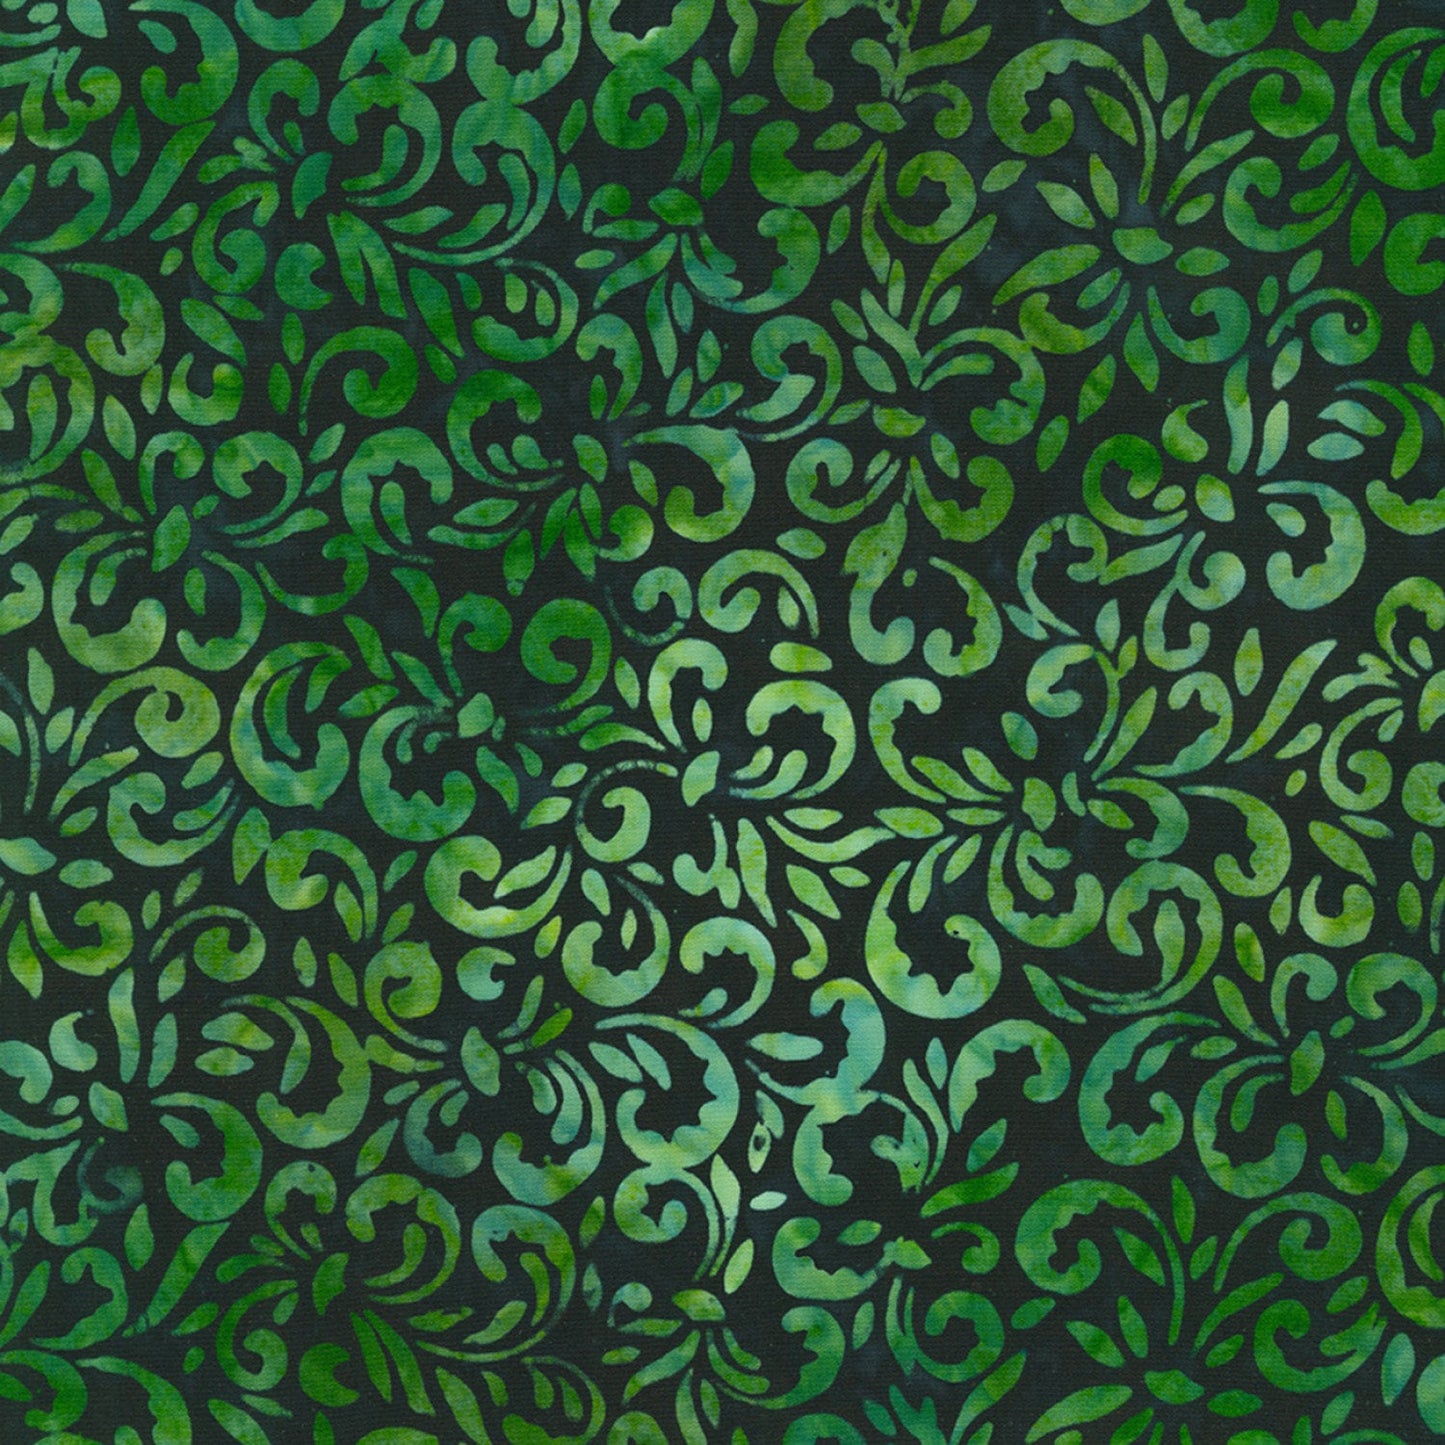 Artisan Batiks Lily Bella 21 Piece Fat Quarter Bundle, Robert Kaufman FQ-2072-21, Purple Green Floral Batiks, 18 x 22 Fabric Cuts